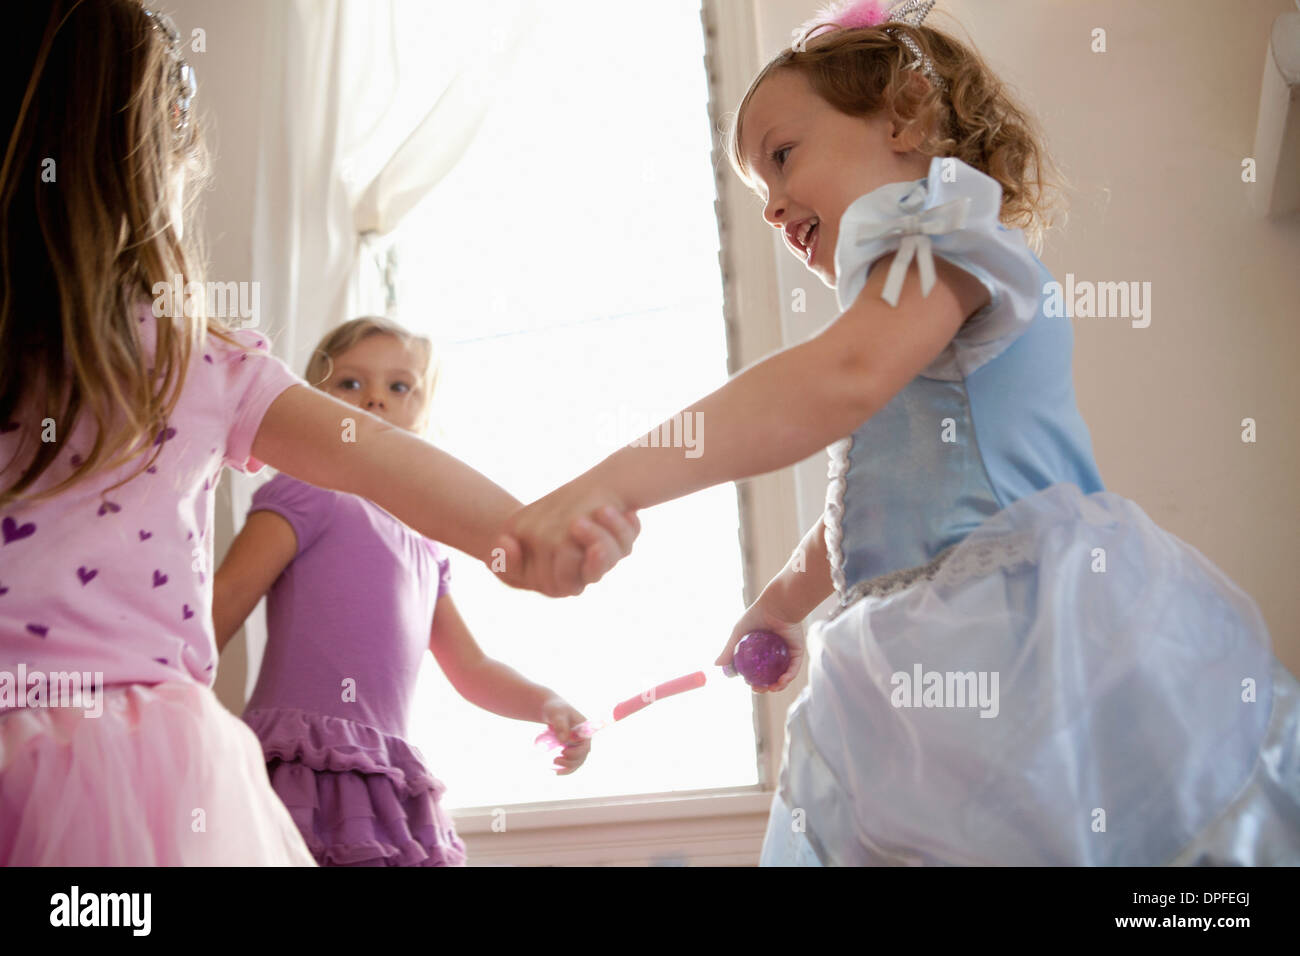 Drei junge Mädchen im Festkleid Hand in Hand und tanzen Stockfoto